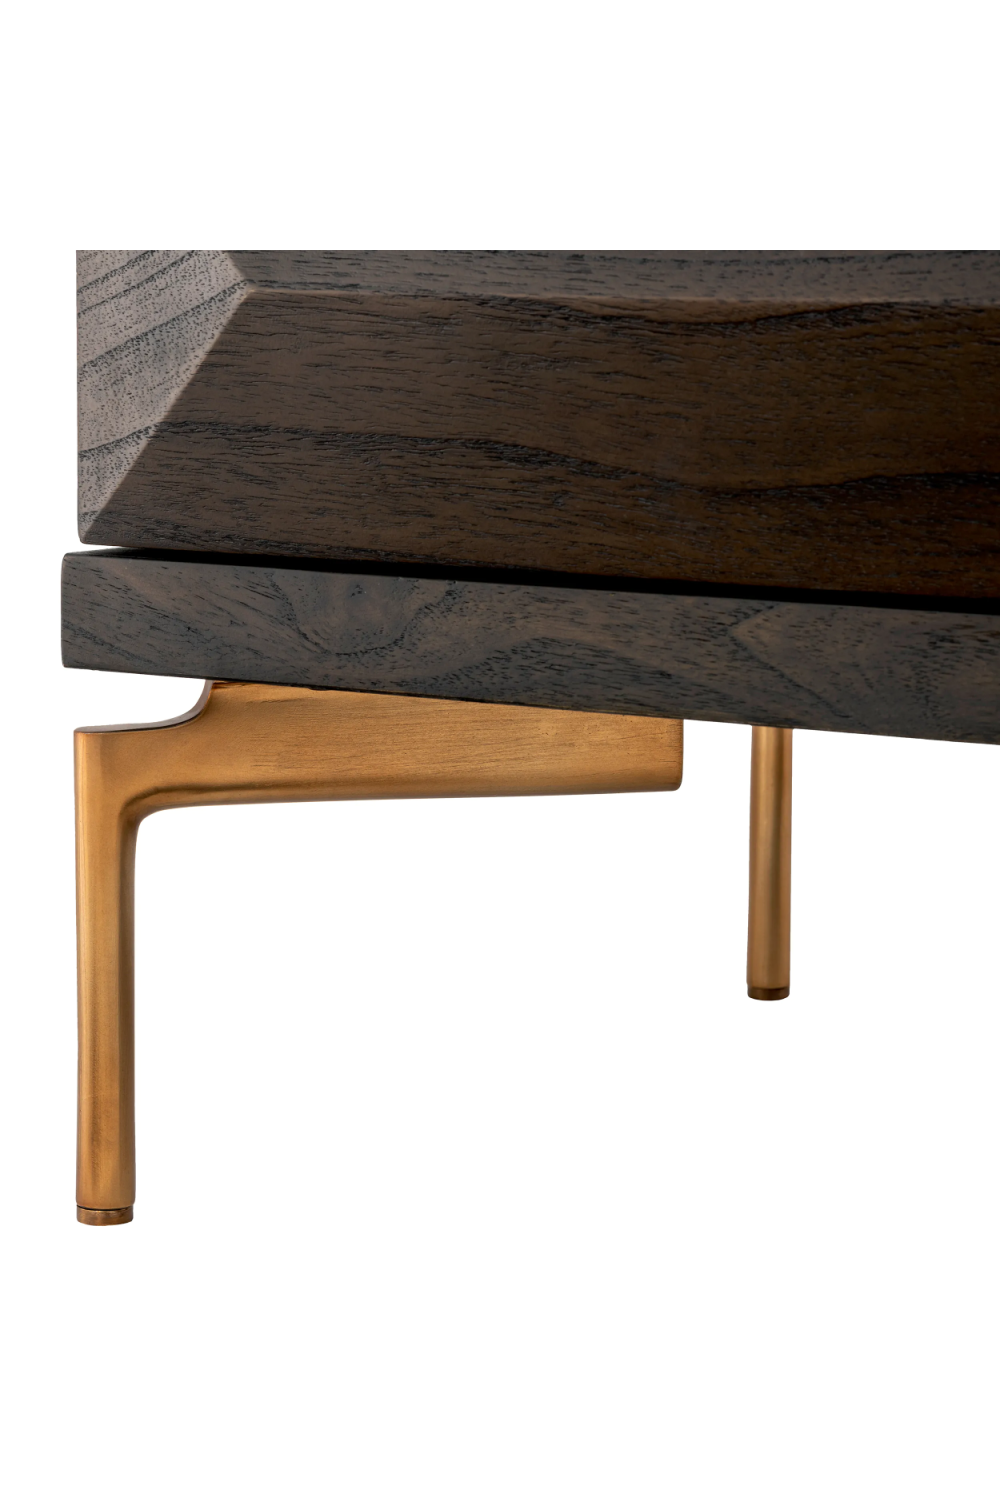 Wooden Contemporary Dresser | Eichholtz Denver | Oroa.com